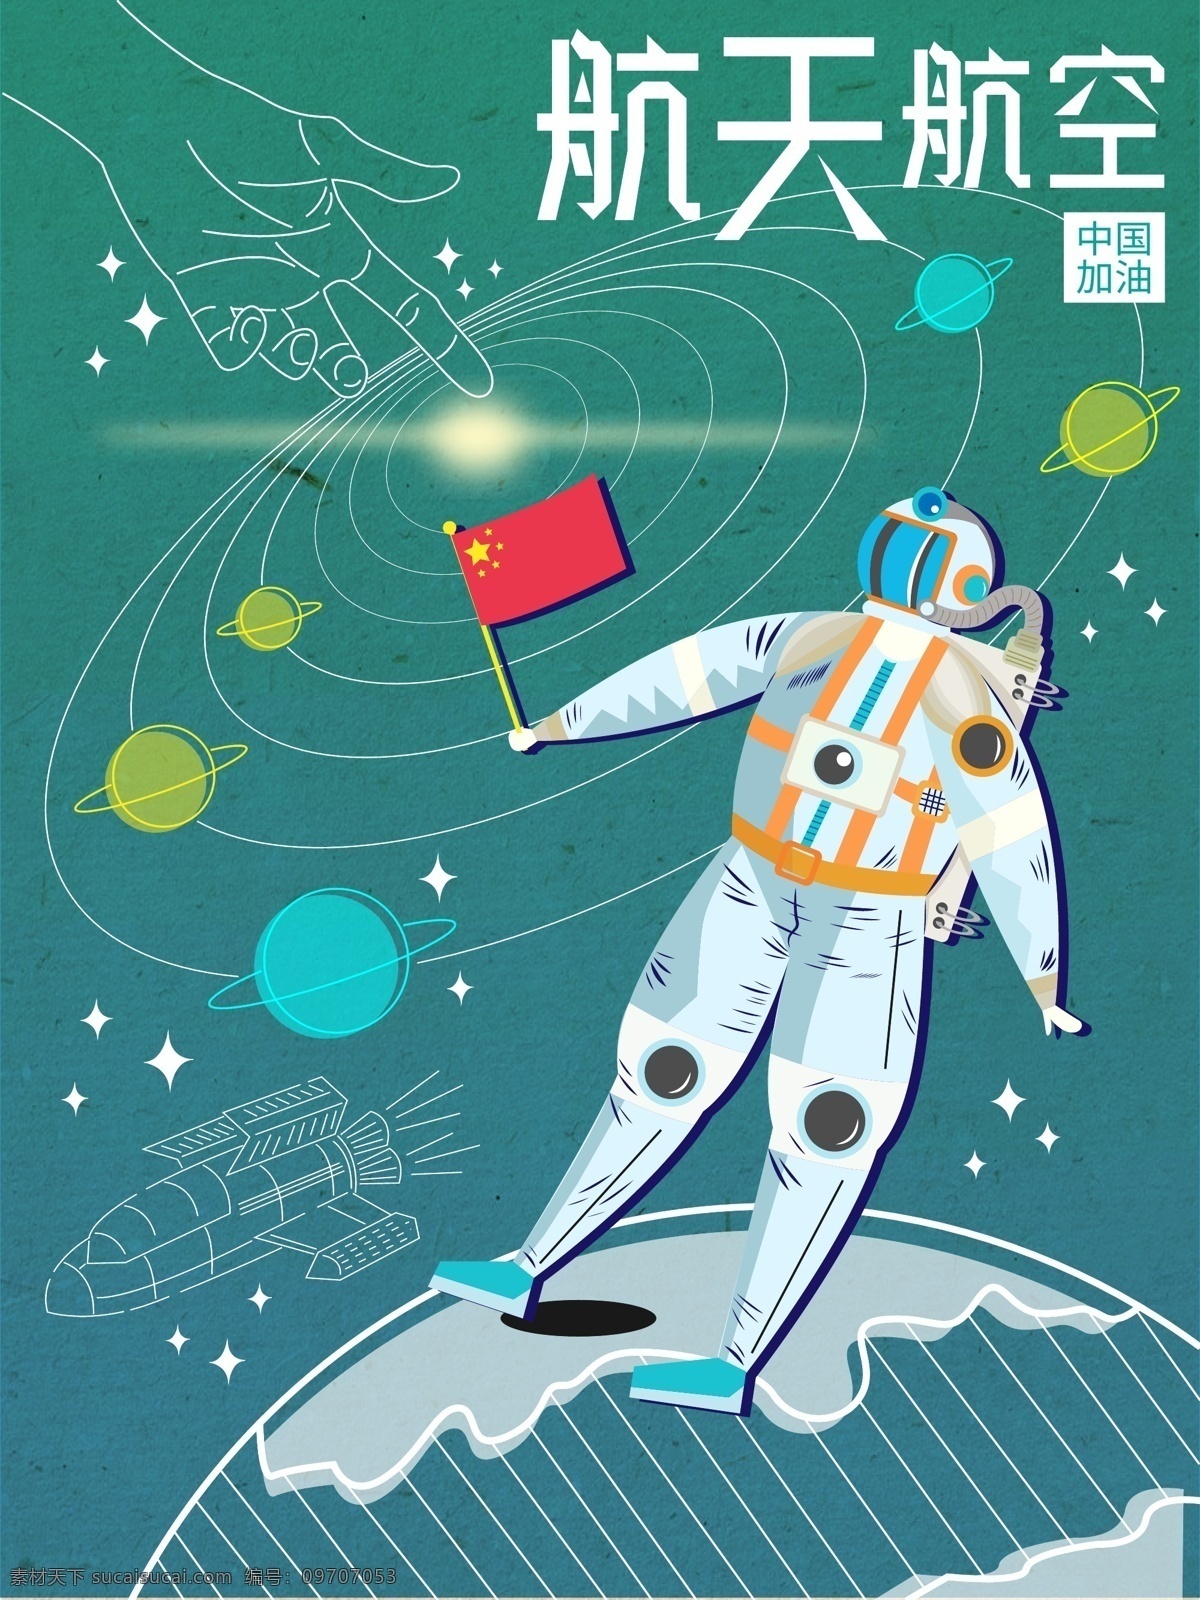 世界 航空 日 虚实 相生 原创 宇航员 加油 插画 海报 航天 中国加油 虚实相生 公益 ai矢量 世界航空日